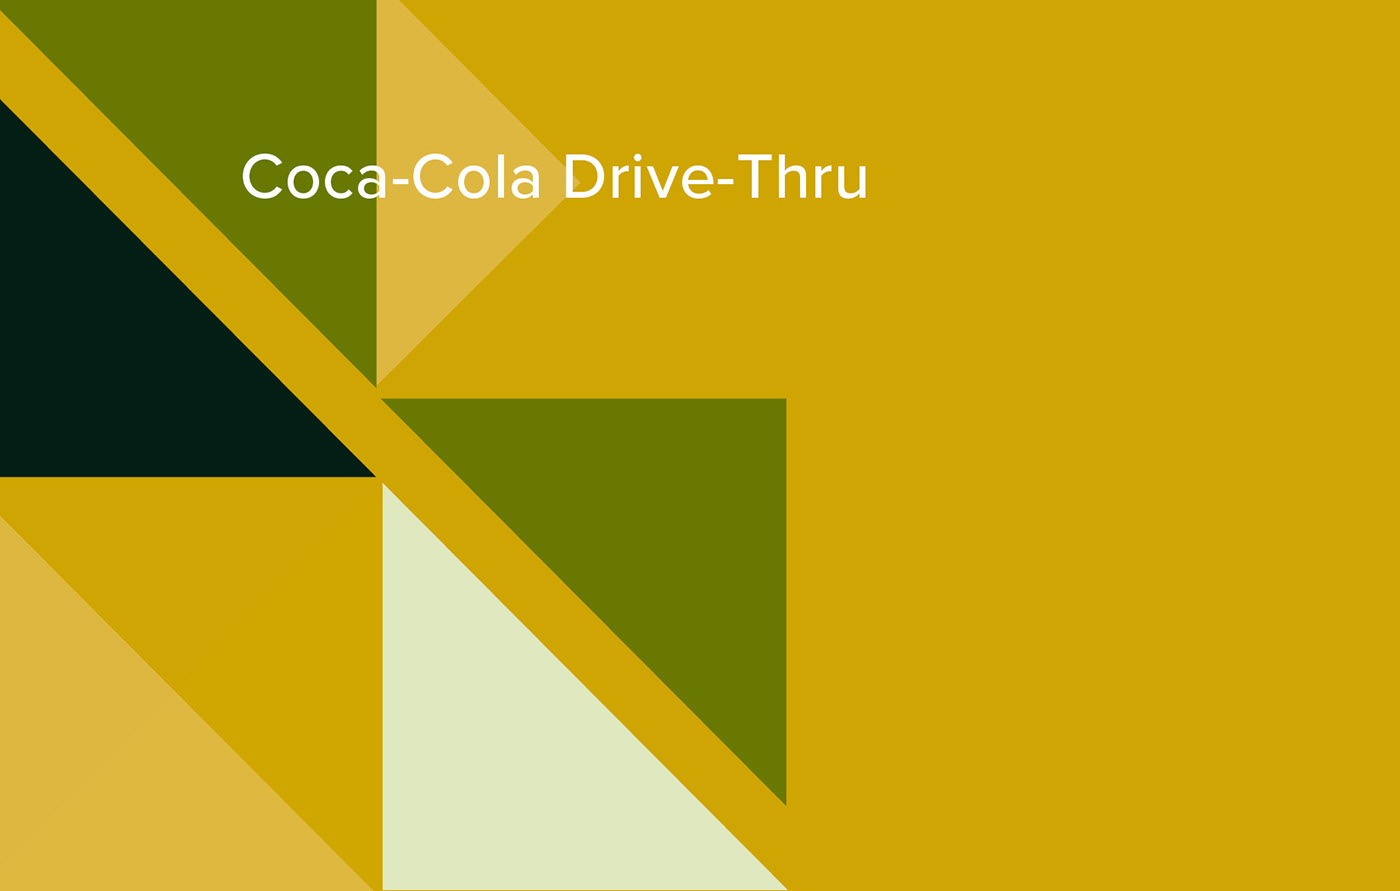 archistudent architecture design interiordesign sketching Coca-Cola drive-thru restaurant Retail handdrawn